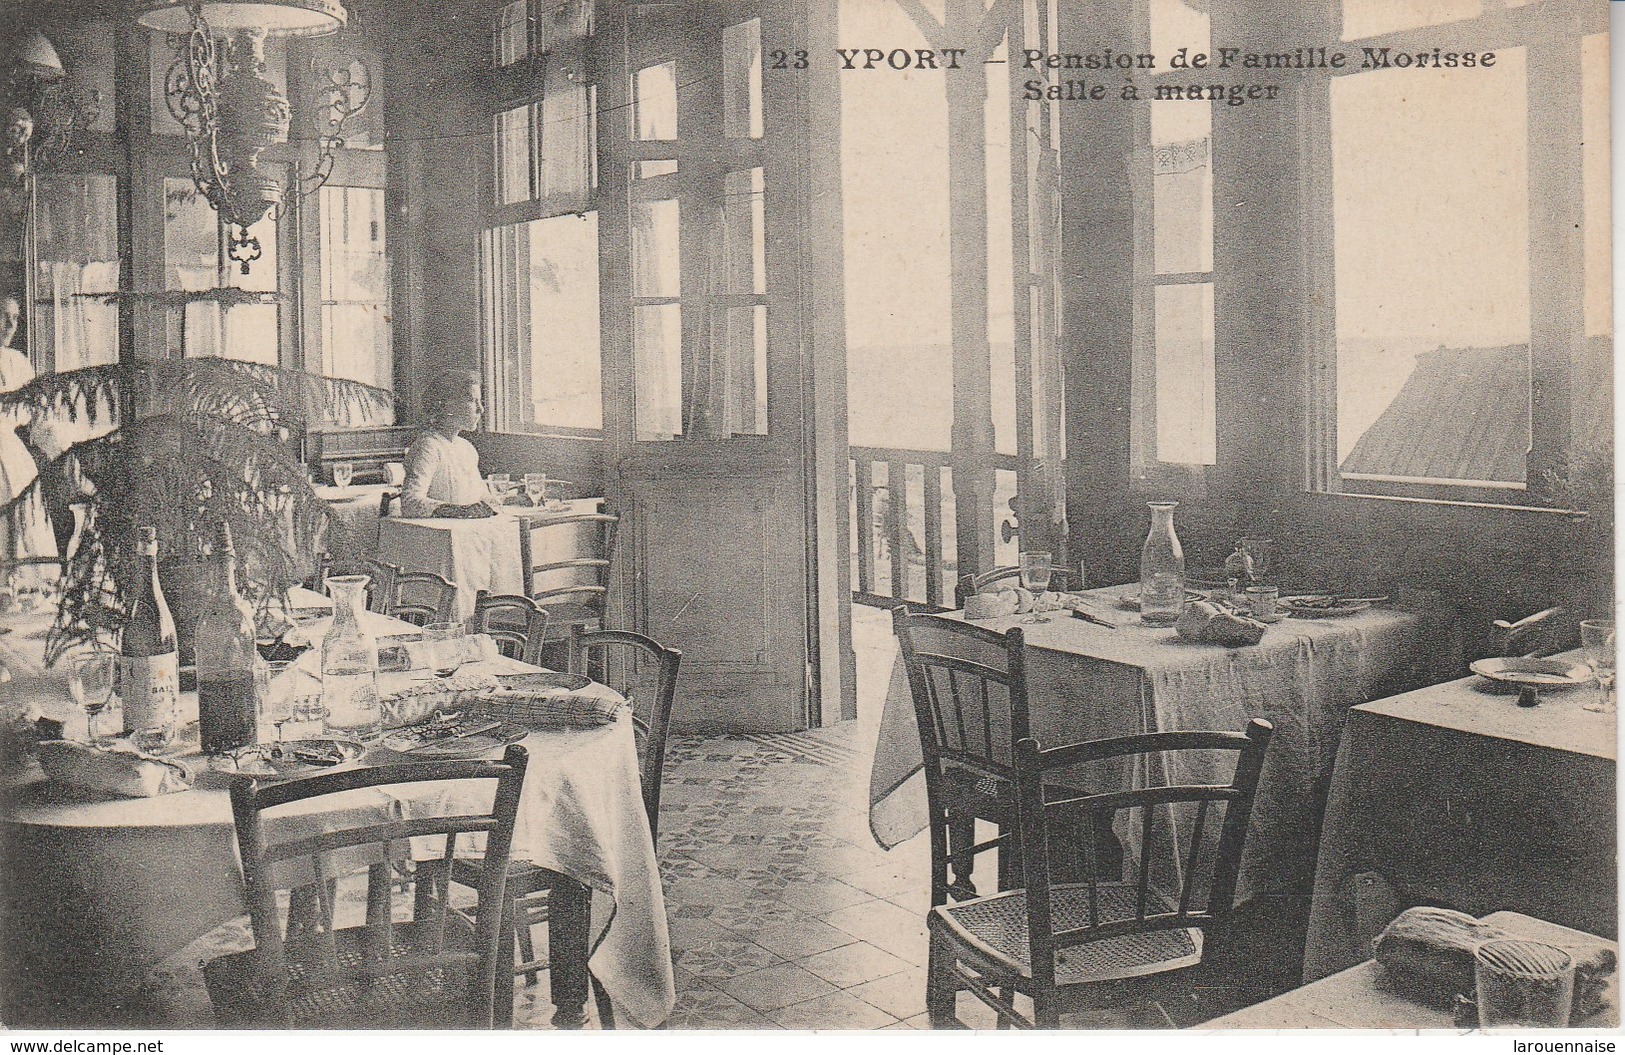 76 - YPORT - Pension De Famille Morisse Salle à Manger - Yport